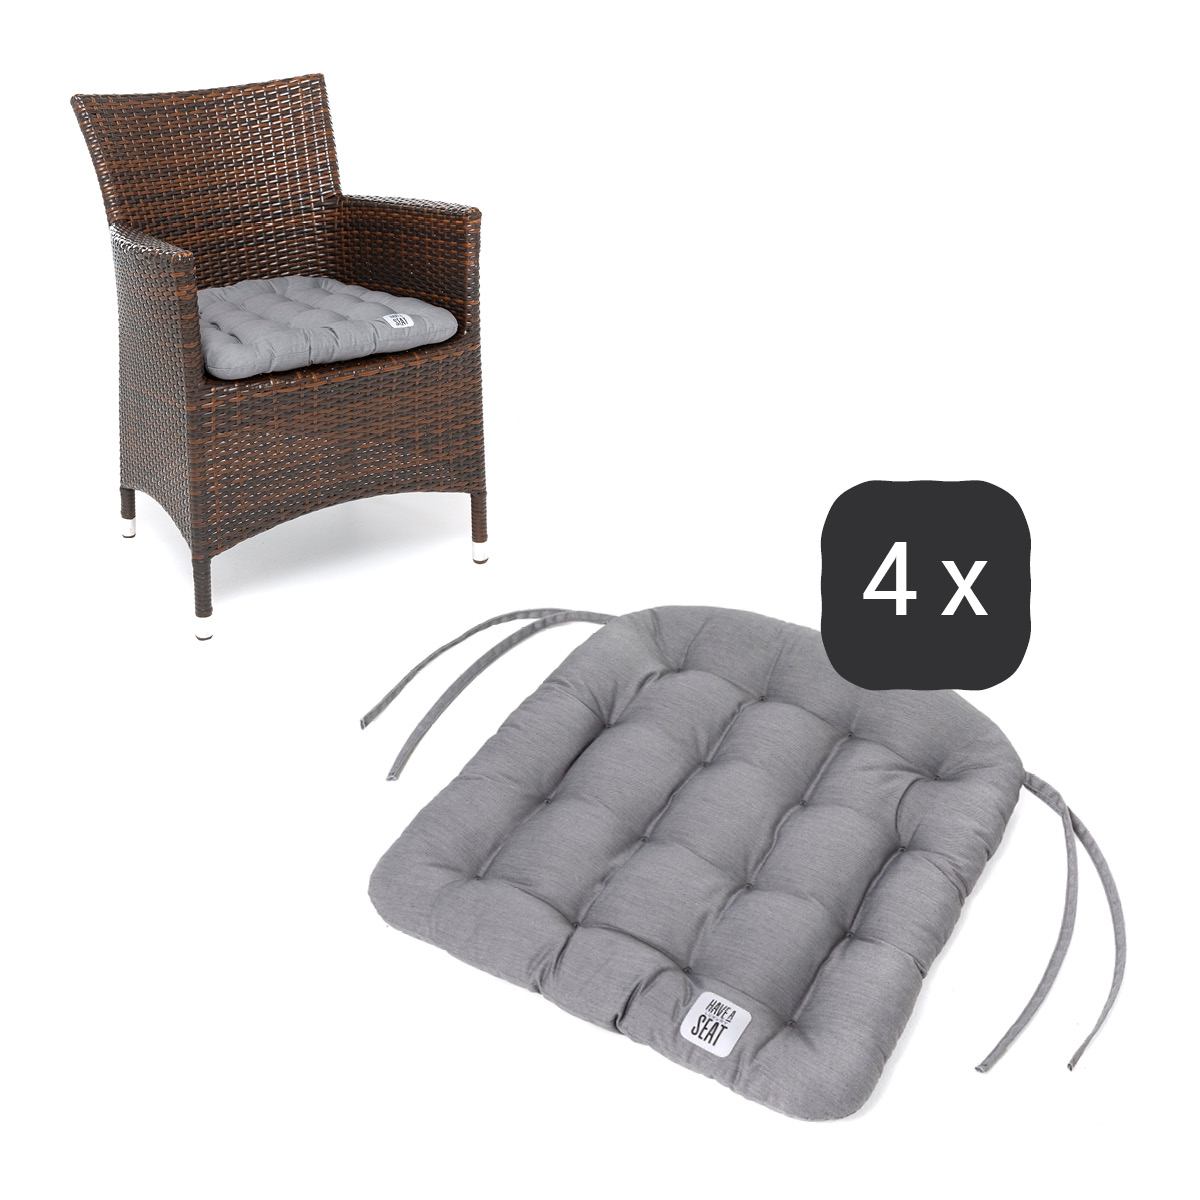 Sitzkissen für Rattanstühle 48x46 cm | Hellgrau | 4er Set | Premium-Sitzkomfort | Indoor / Outdoor | waschbar bis 95°C | HAVE A SEAT Living